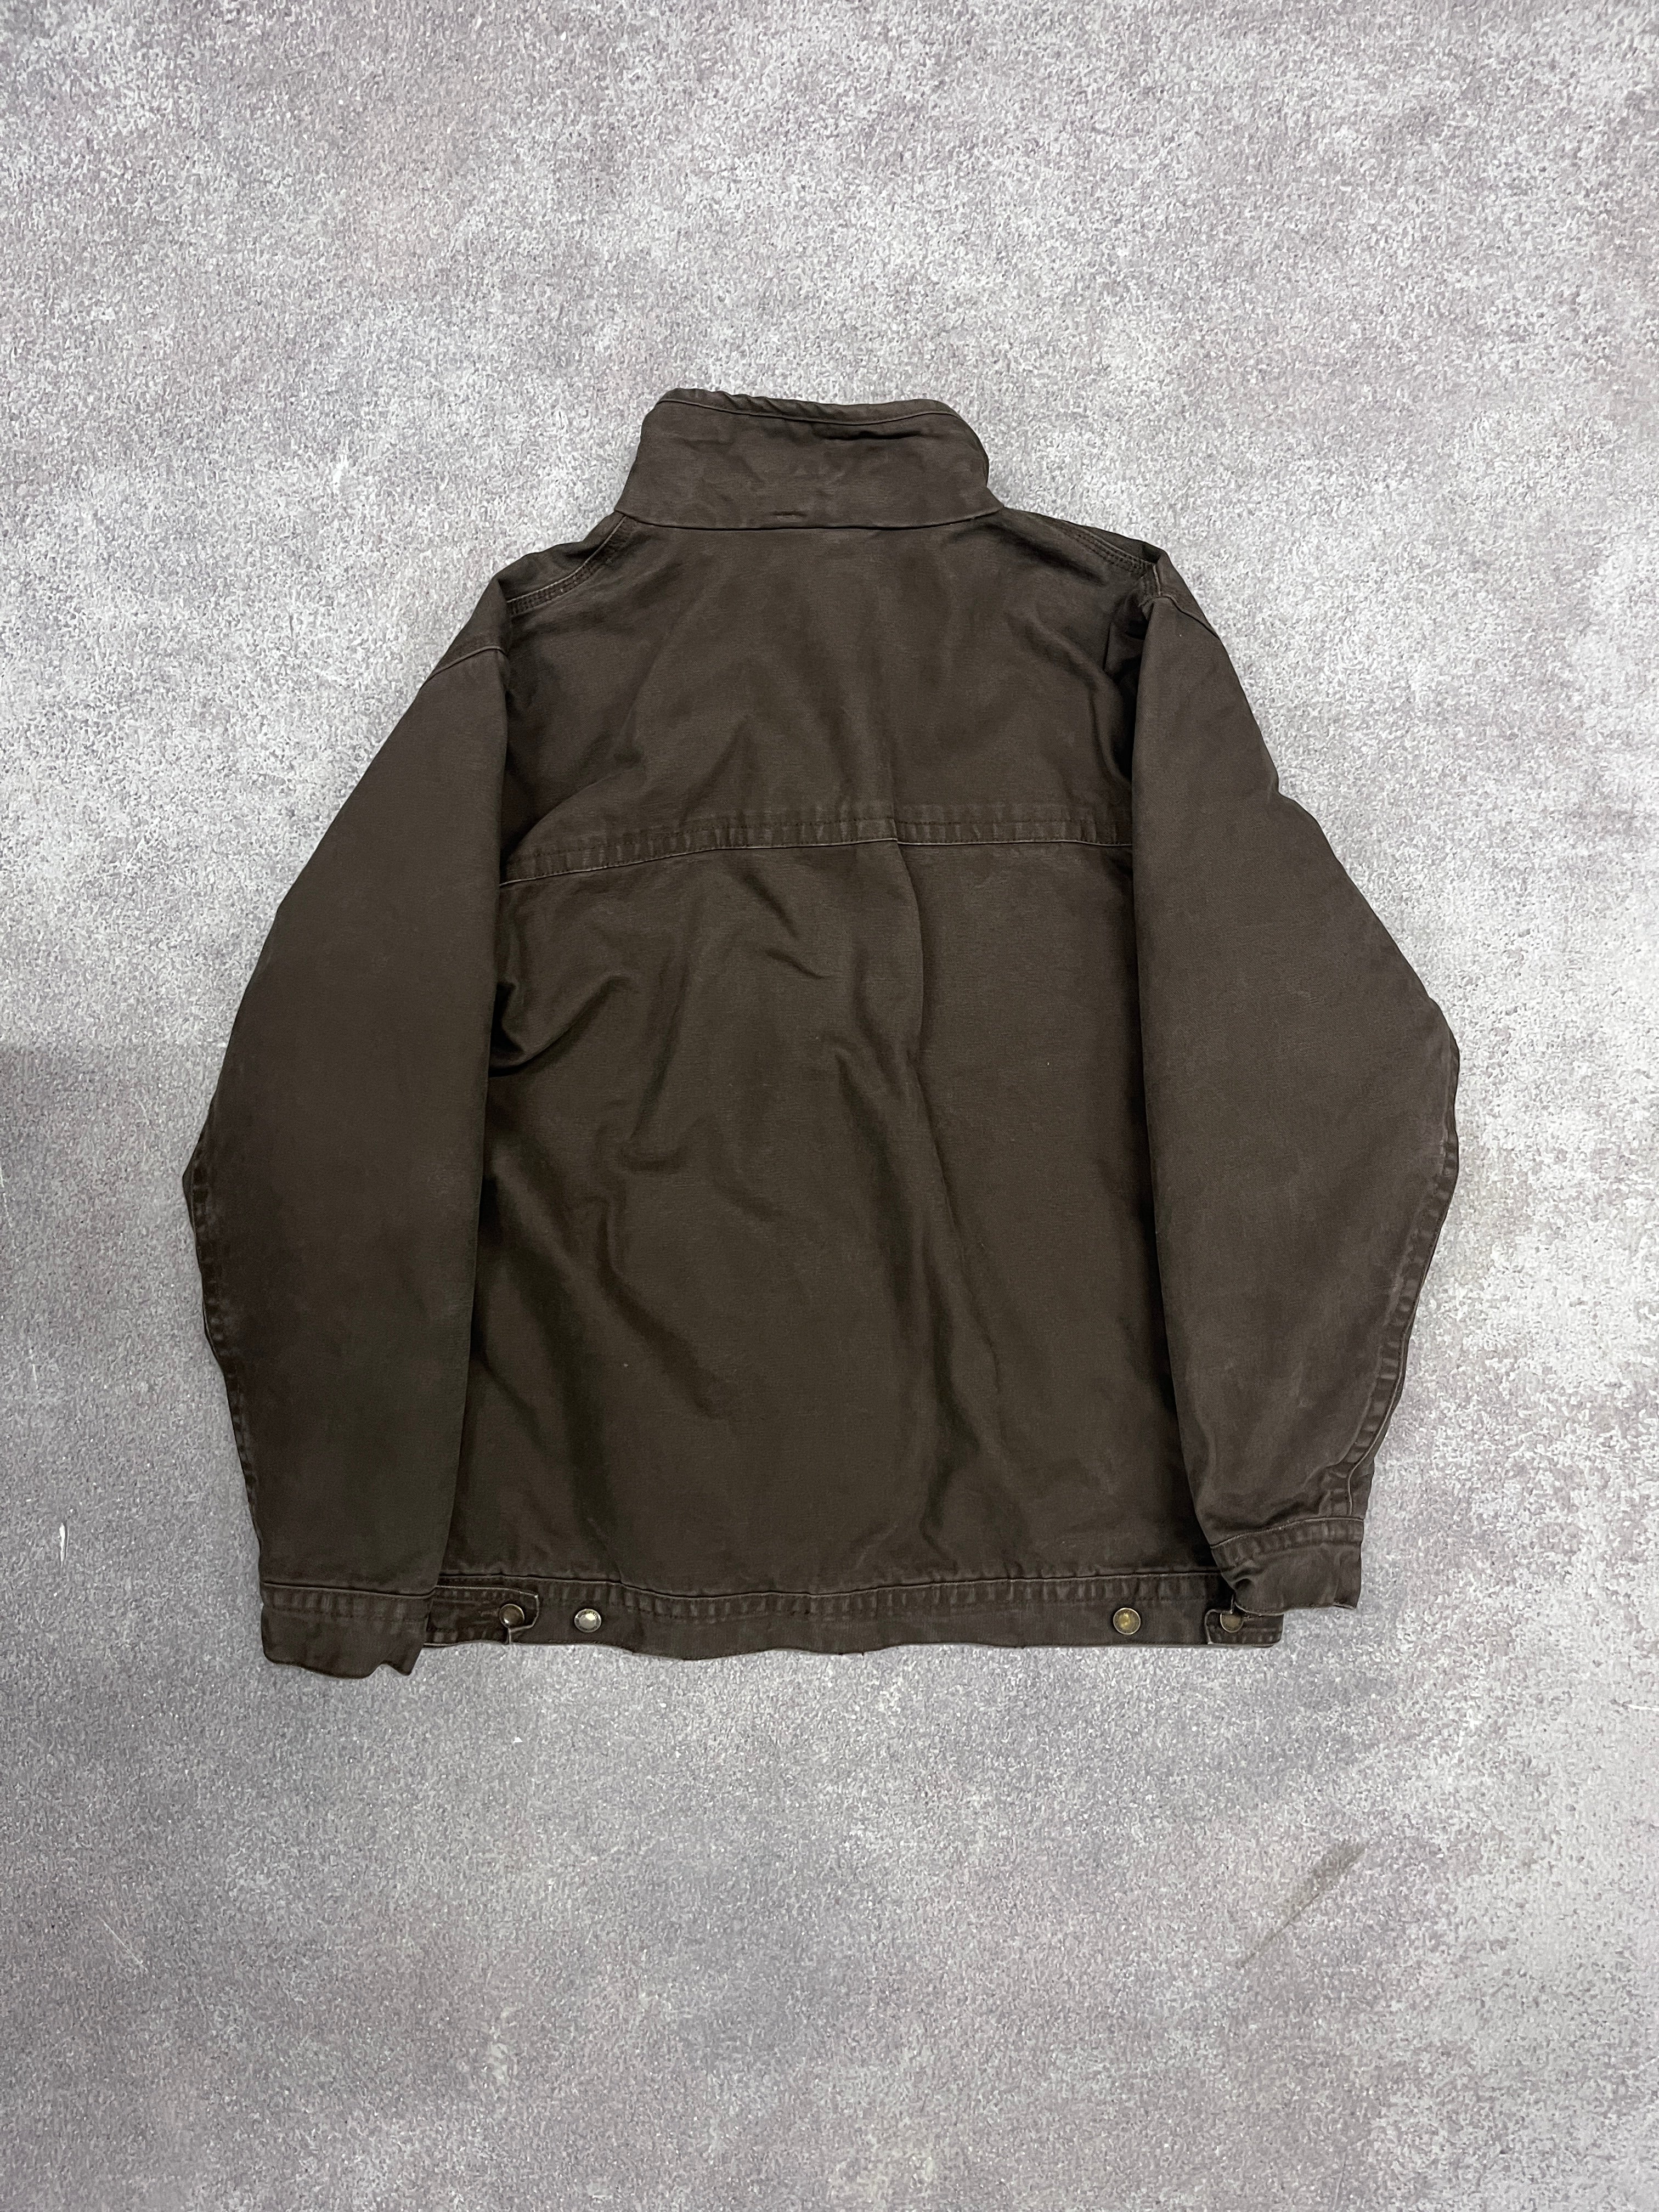 Vintage Workwear Jacket Brown // Large - RHAGHOUSE VINTAGE